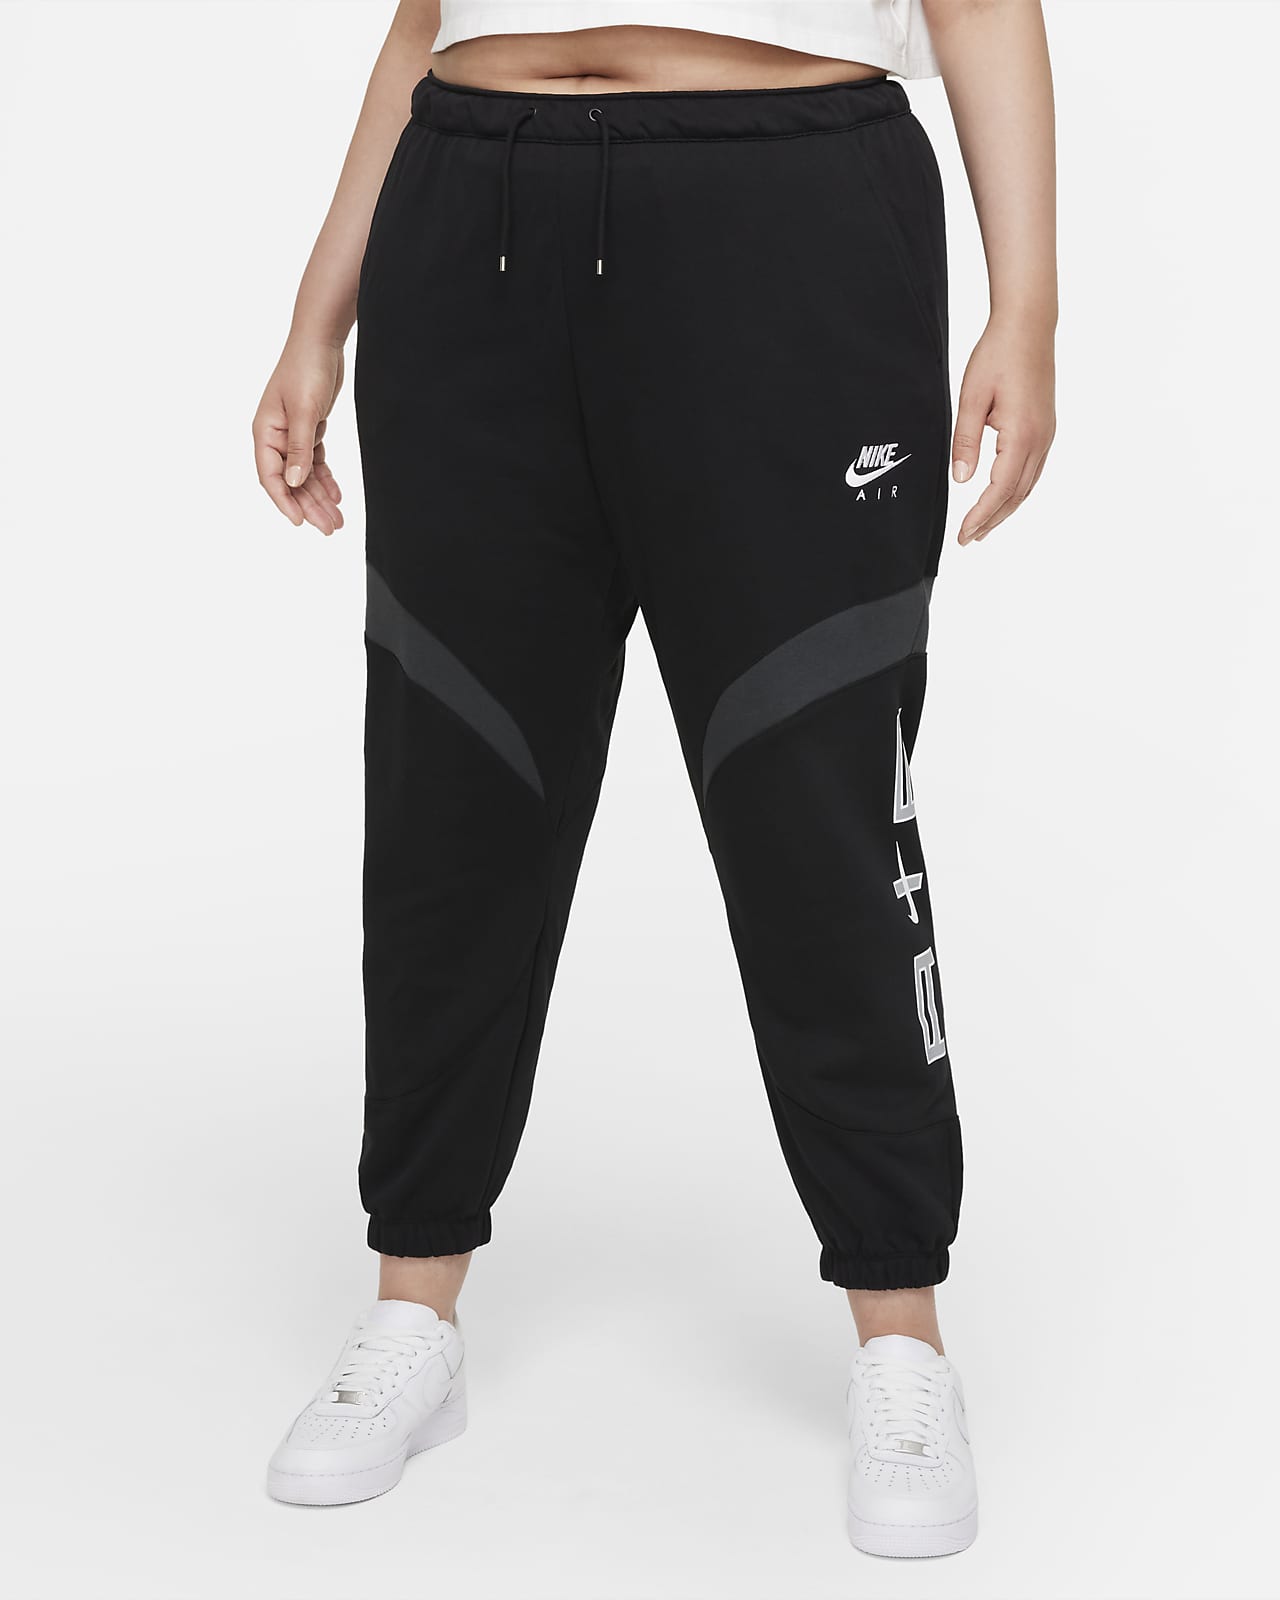 Nike Air női szabadidőnadrág (plus size méret)